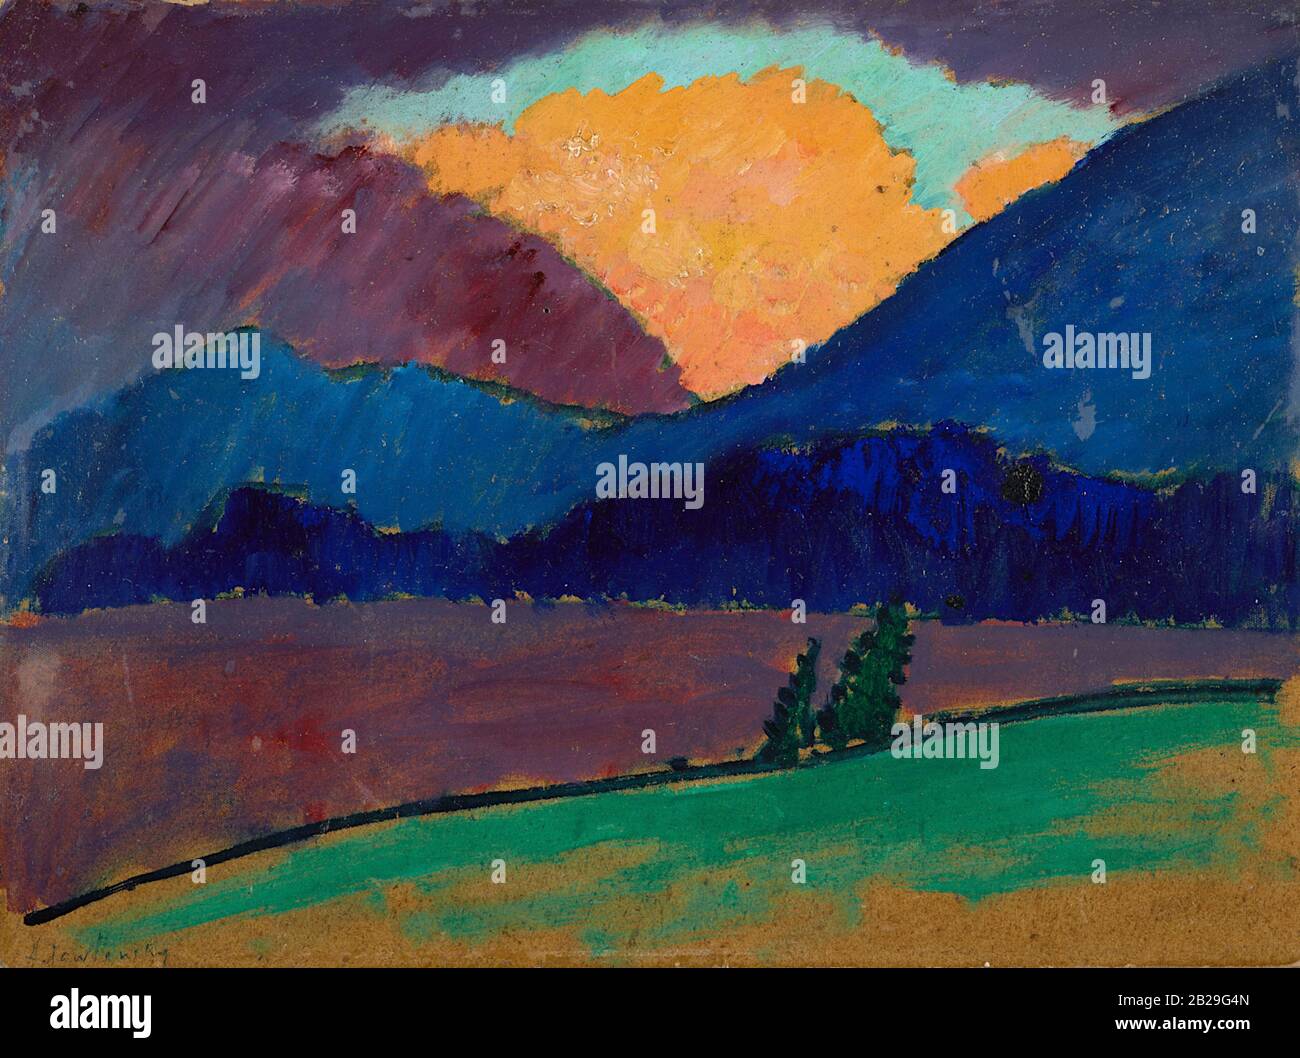 Serata estiva a Murnau (Sommerabend a Murnau) (1908) dipinto di Alexej von Jawlensky - immagine Di Altissima qualità e risoluzione Foto Stock